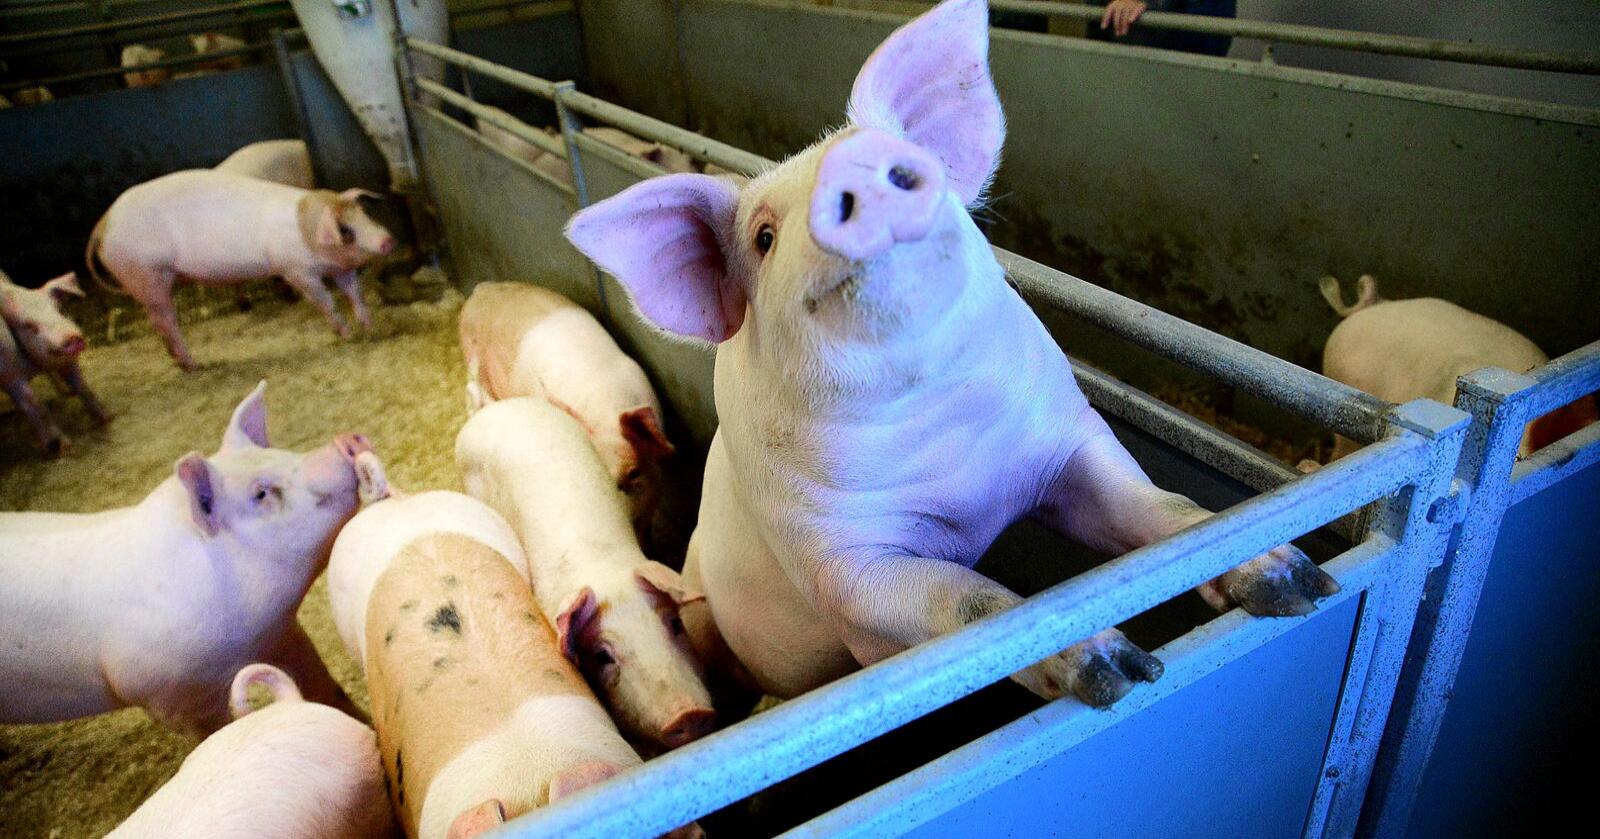 Færre svin: Det ble produsert 20.074 færre griser i Norge i 2020, enn i 2015. Hele 14.989 av dem forsvant fra Nord-Norge, påpeker innsenderen. Foto: Siri Juell Rasmussen